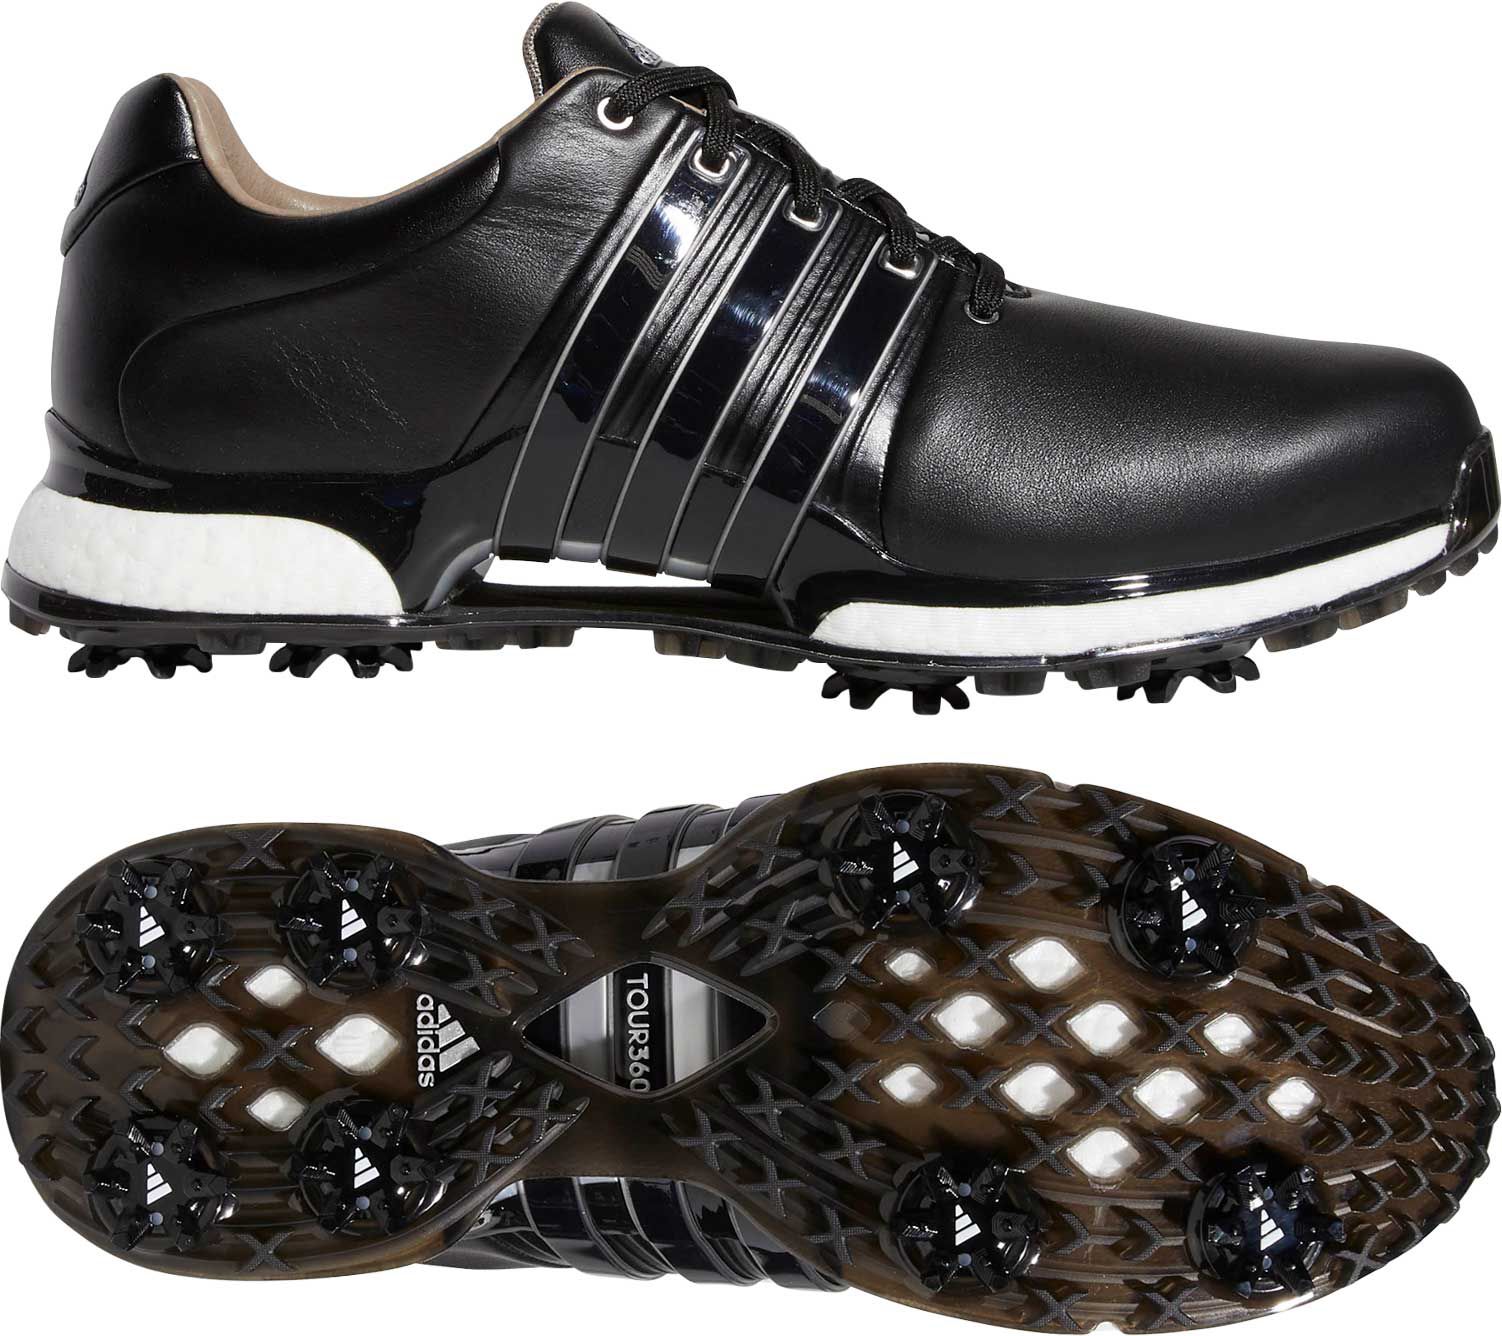 adidas men's tour360 xt golf shoes 2020